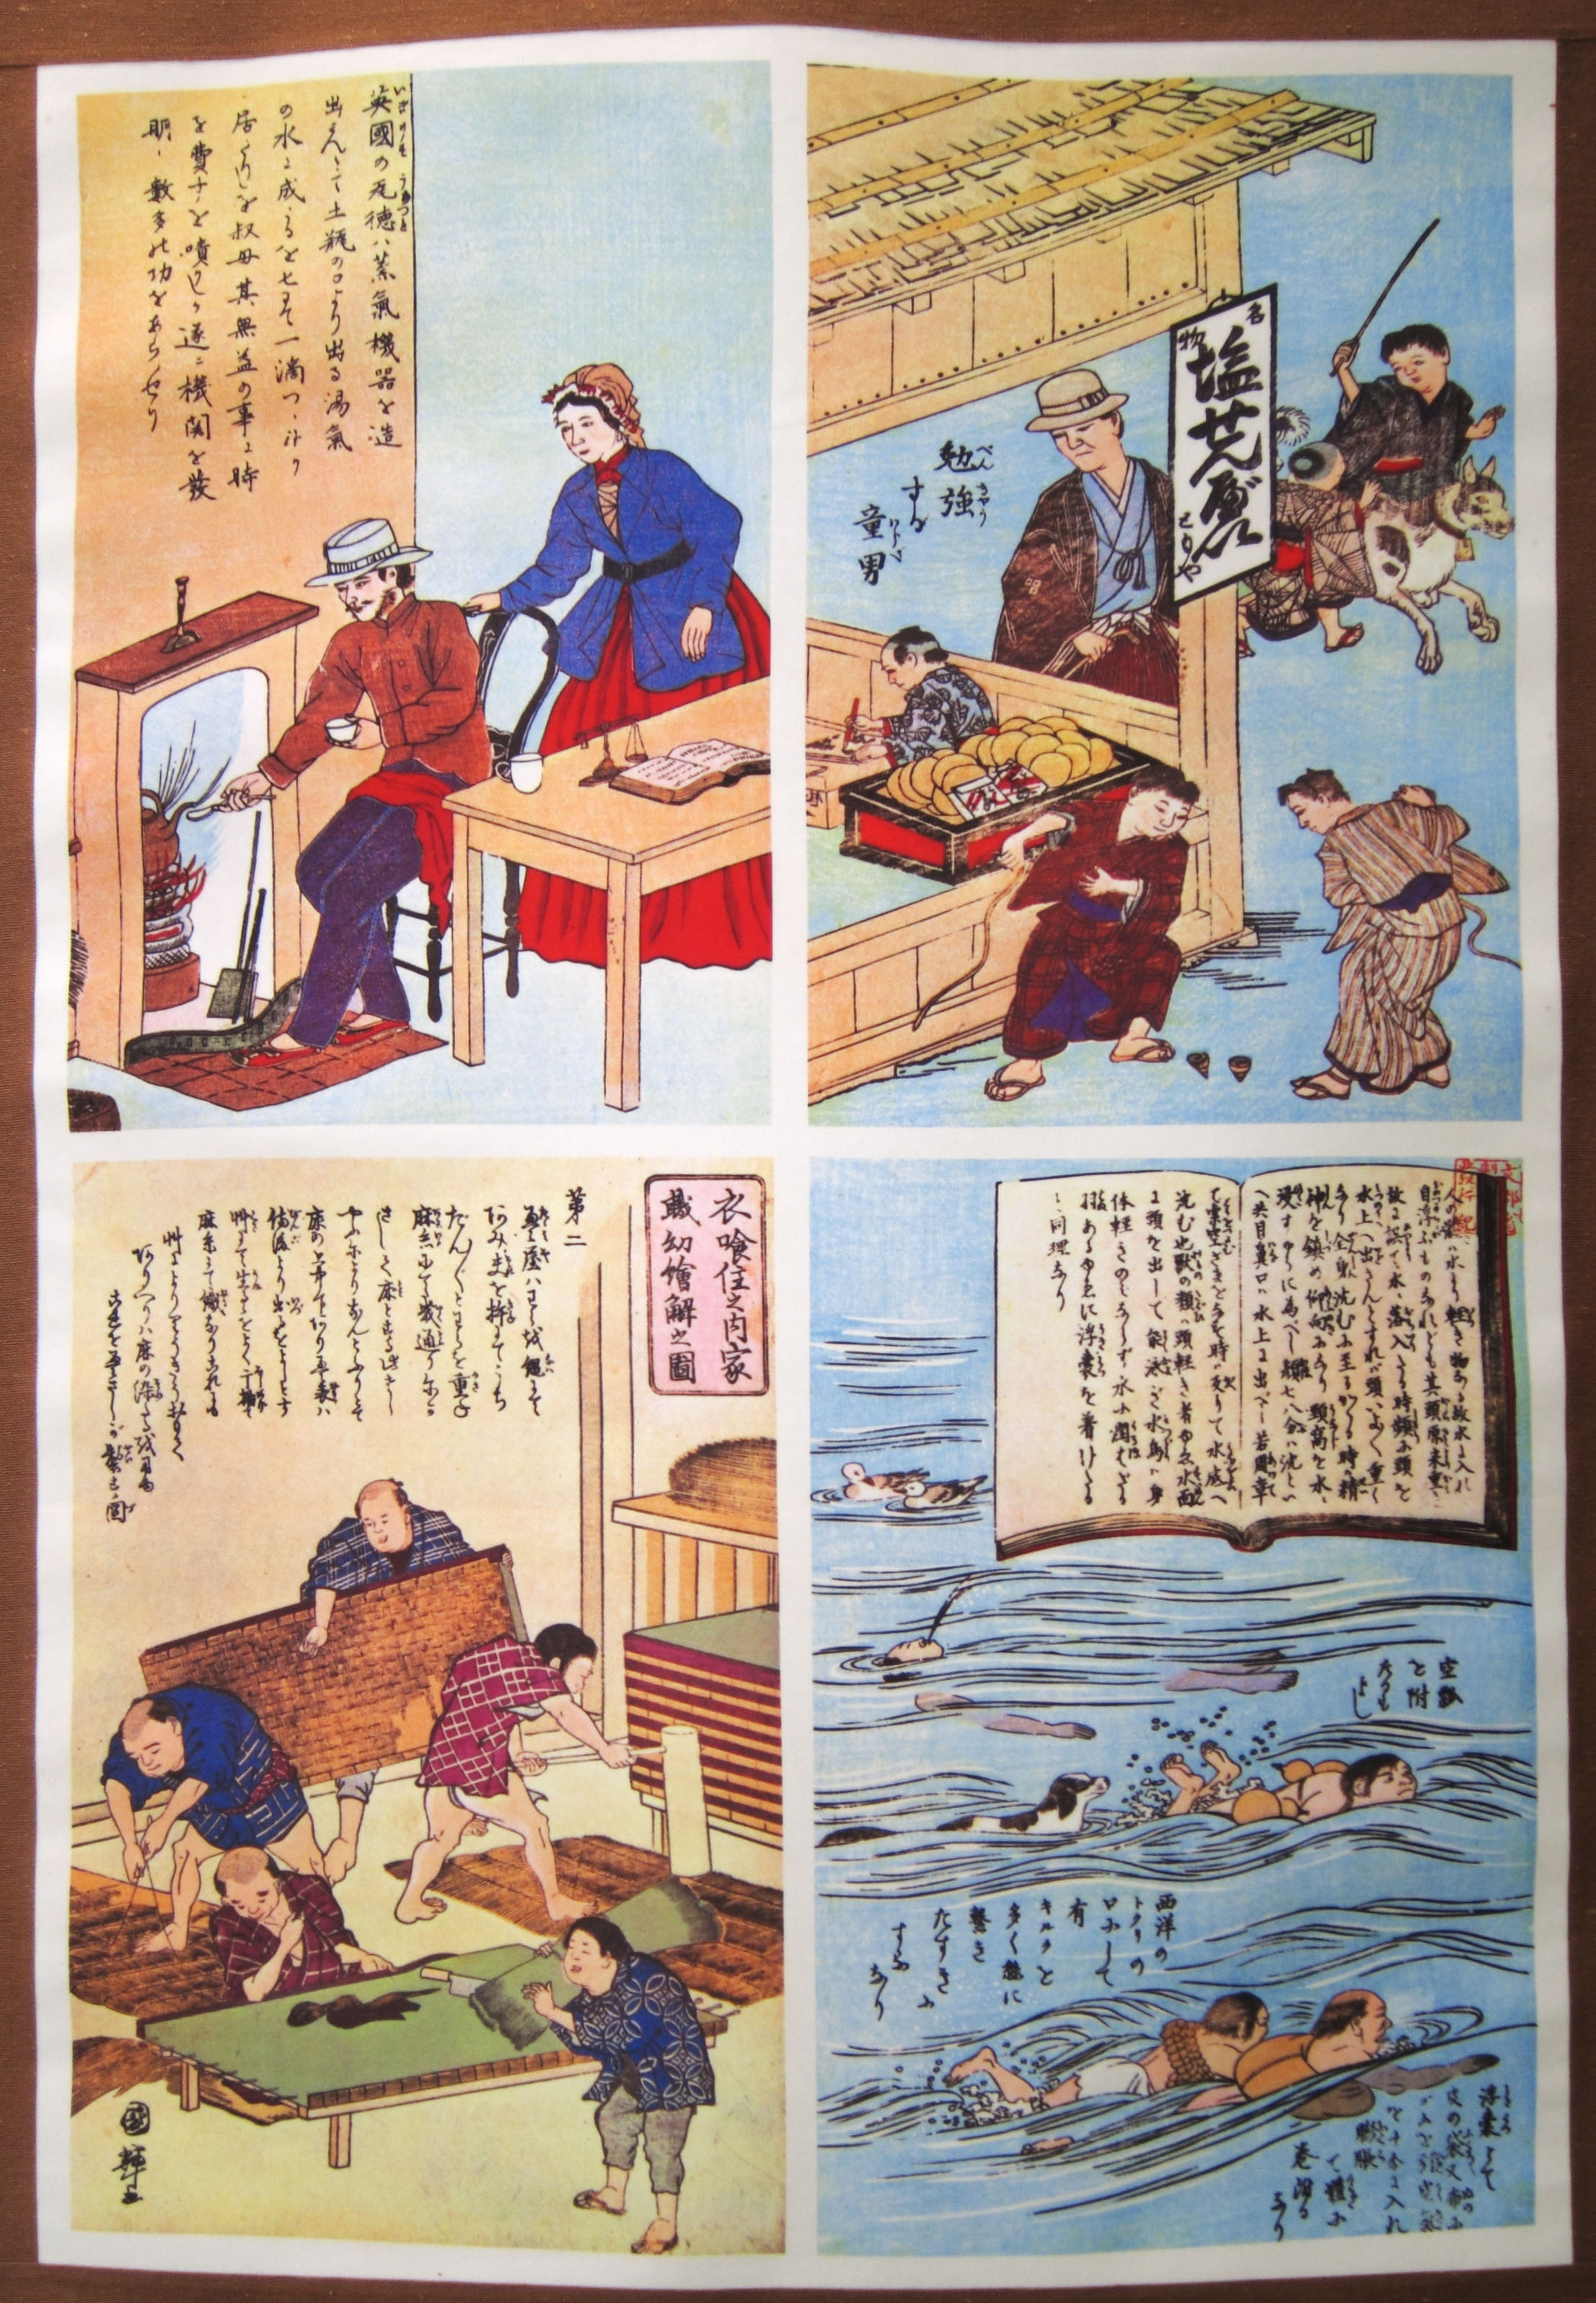 fotografia, material, livra, ajardine, imagine, proveja fotografia,Meiji-mura Aldeia Museu ilustrao, quadro, Cultura, bolacha de arroz temperou com soja, Herana cultural